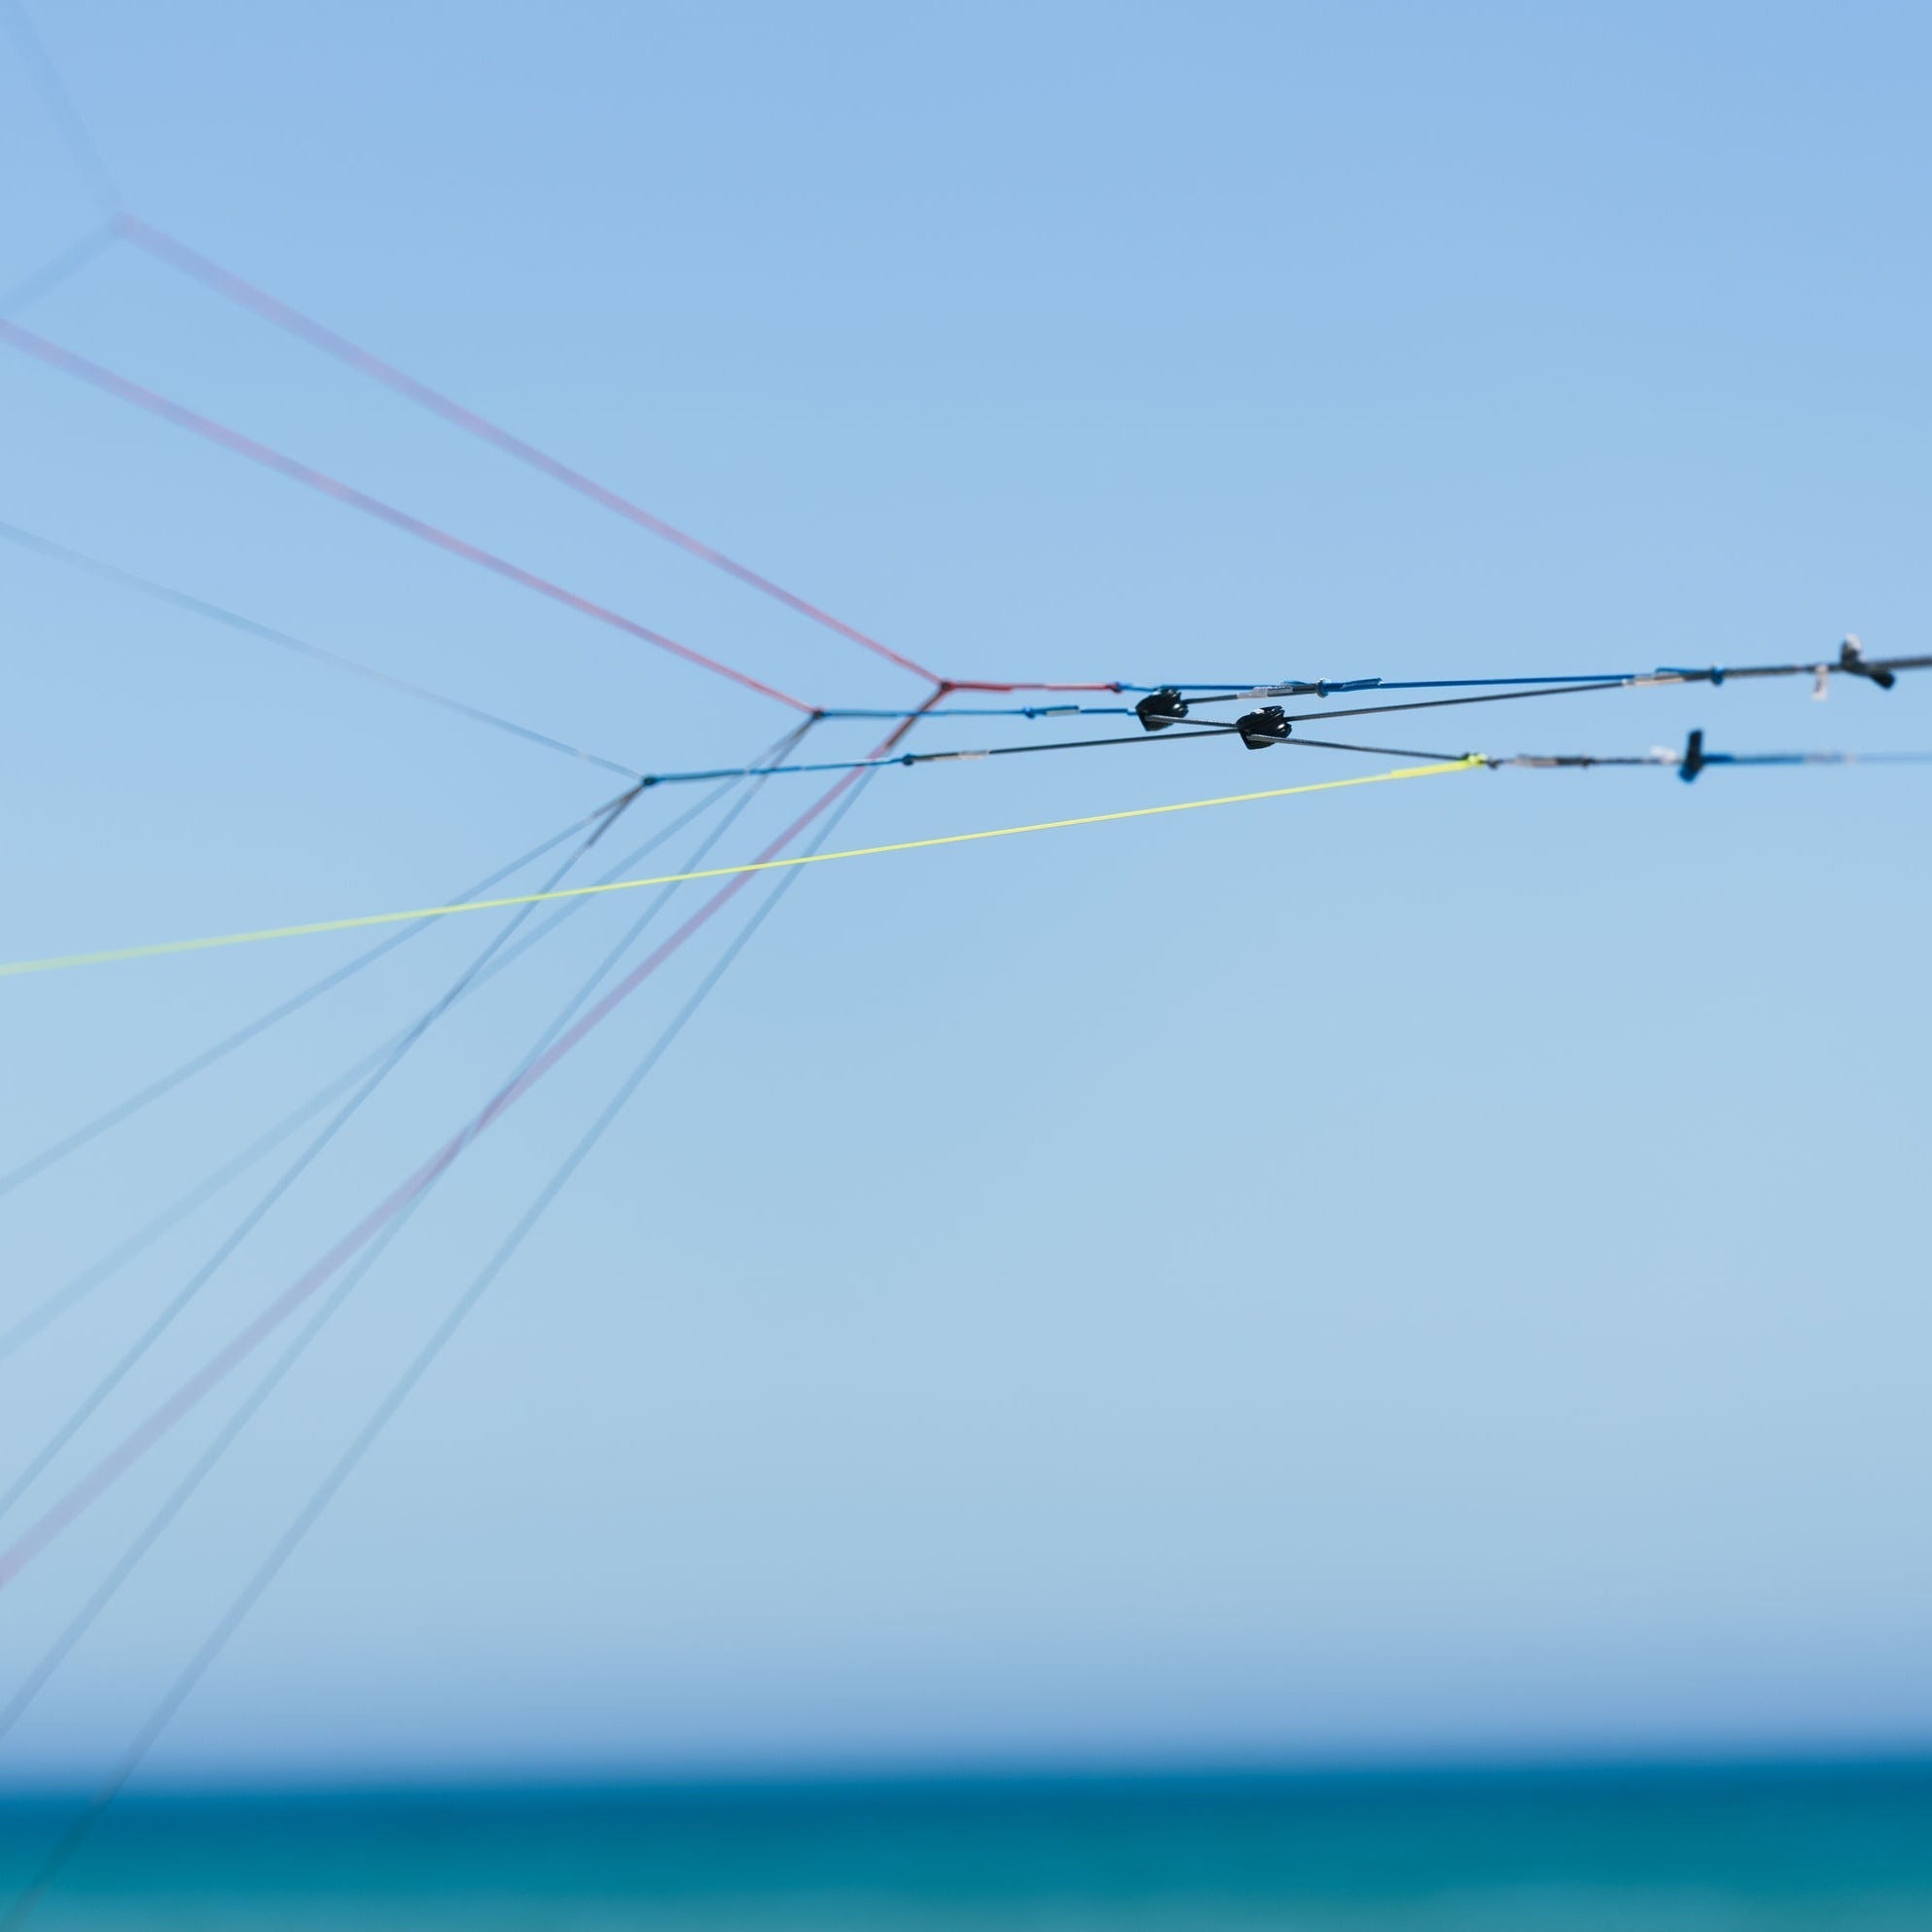 The Ozone Chrono V4 kitesurfing kite.